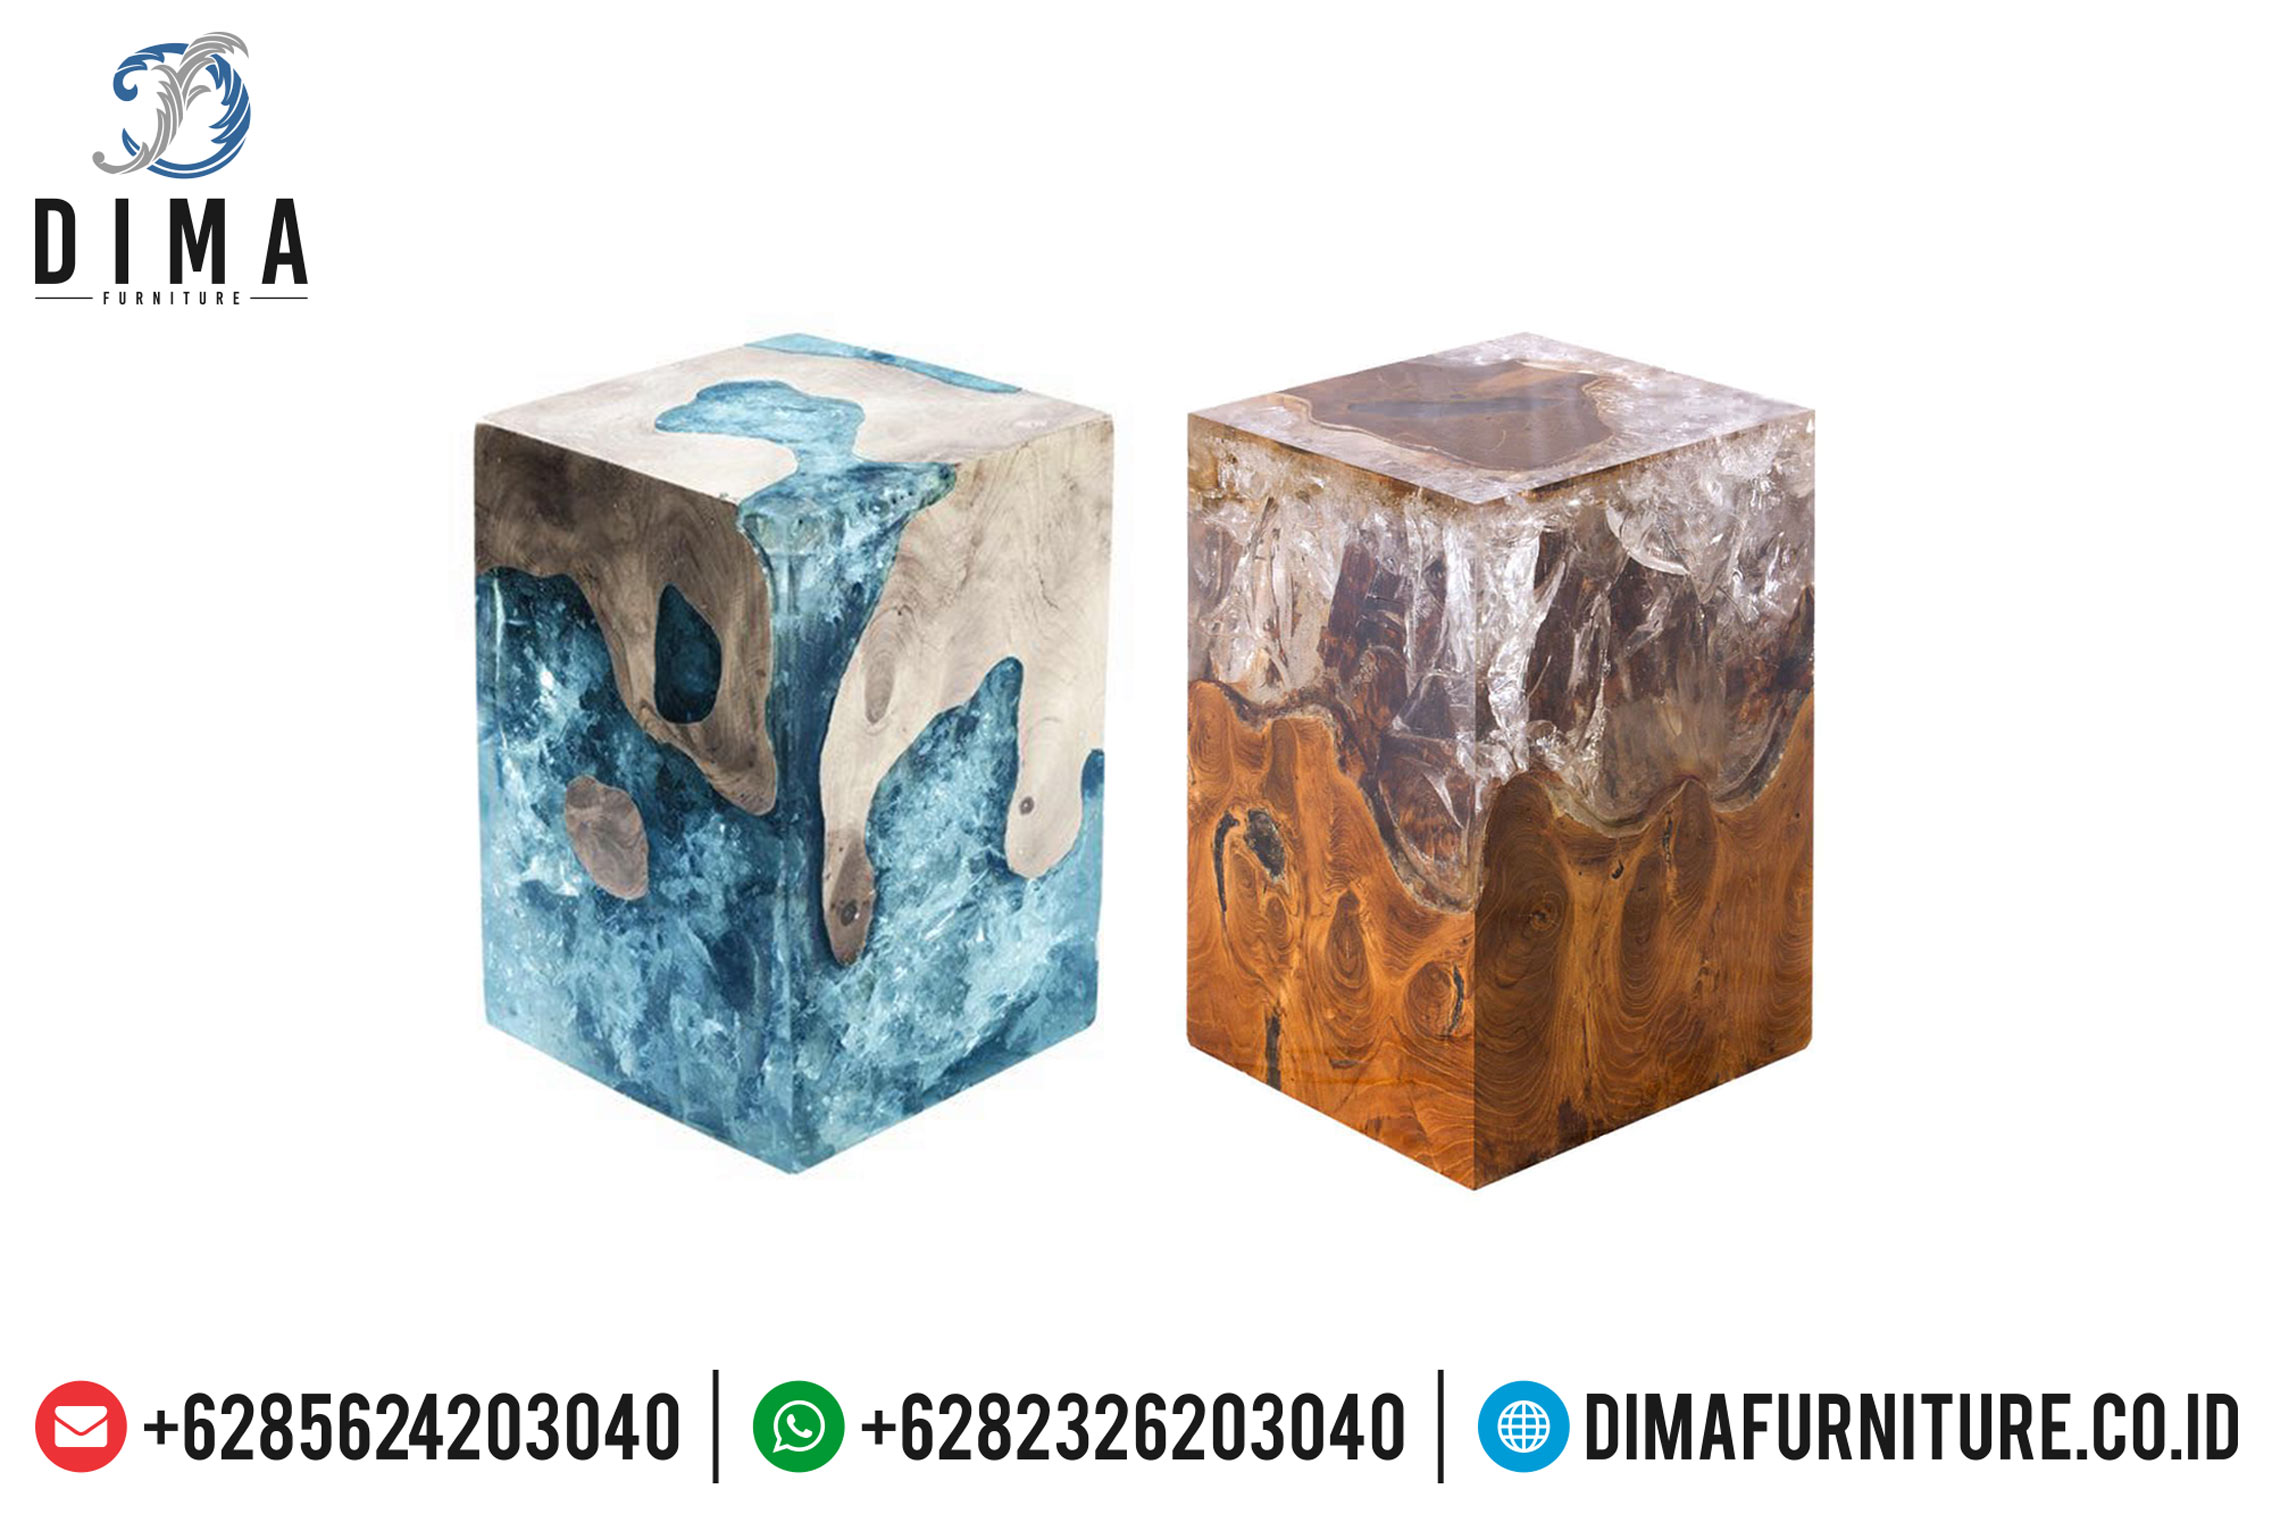 Industrial Furniture, Stool Resin Dan Meja Resin Minimalis, Mebel Jepara MM-0383